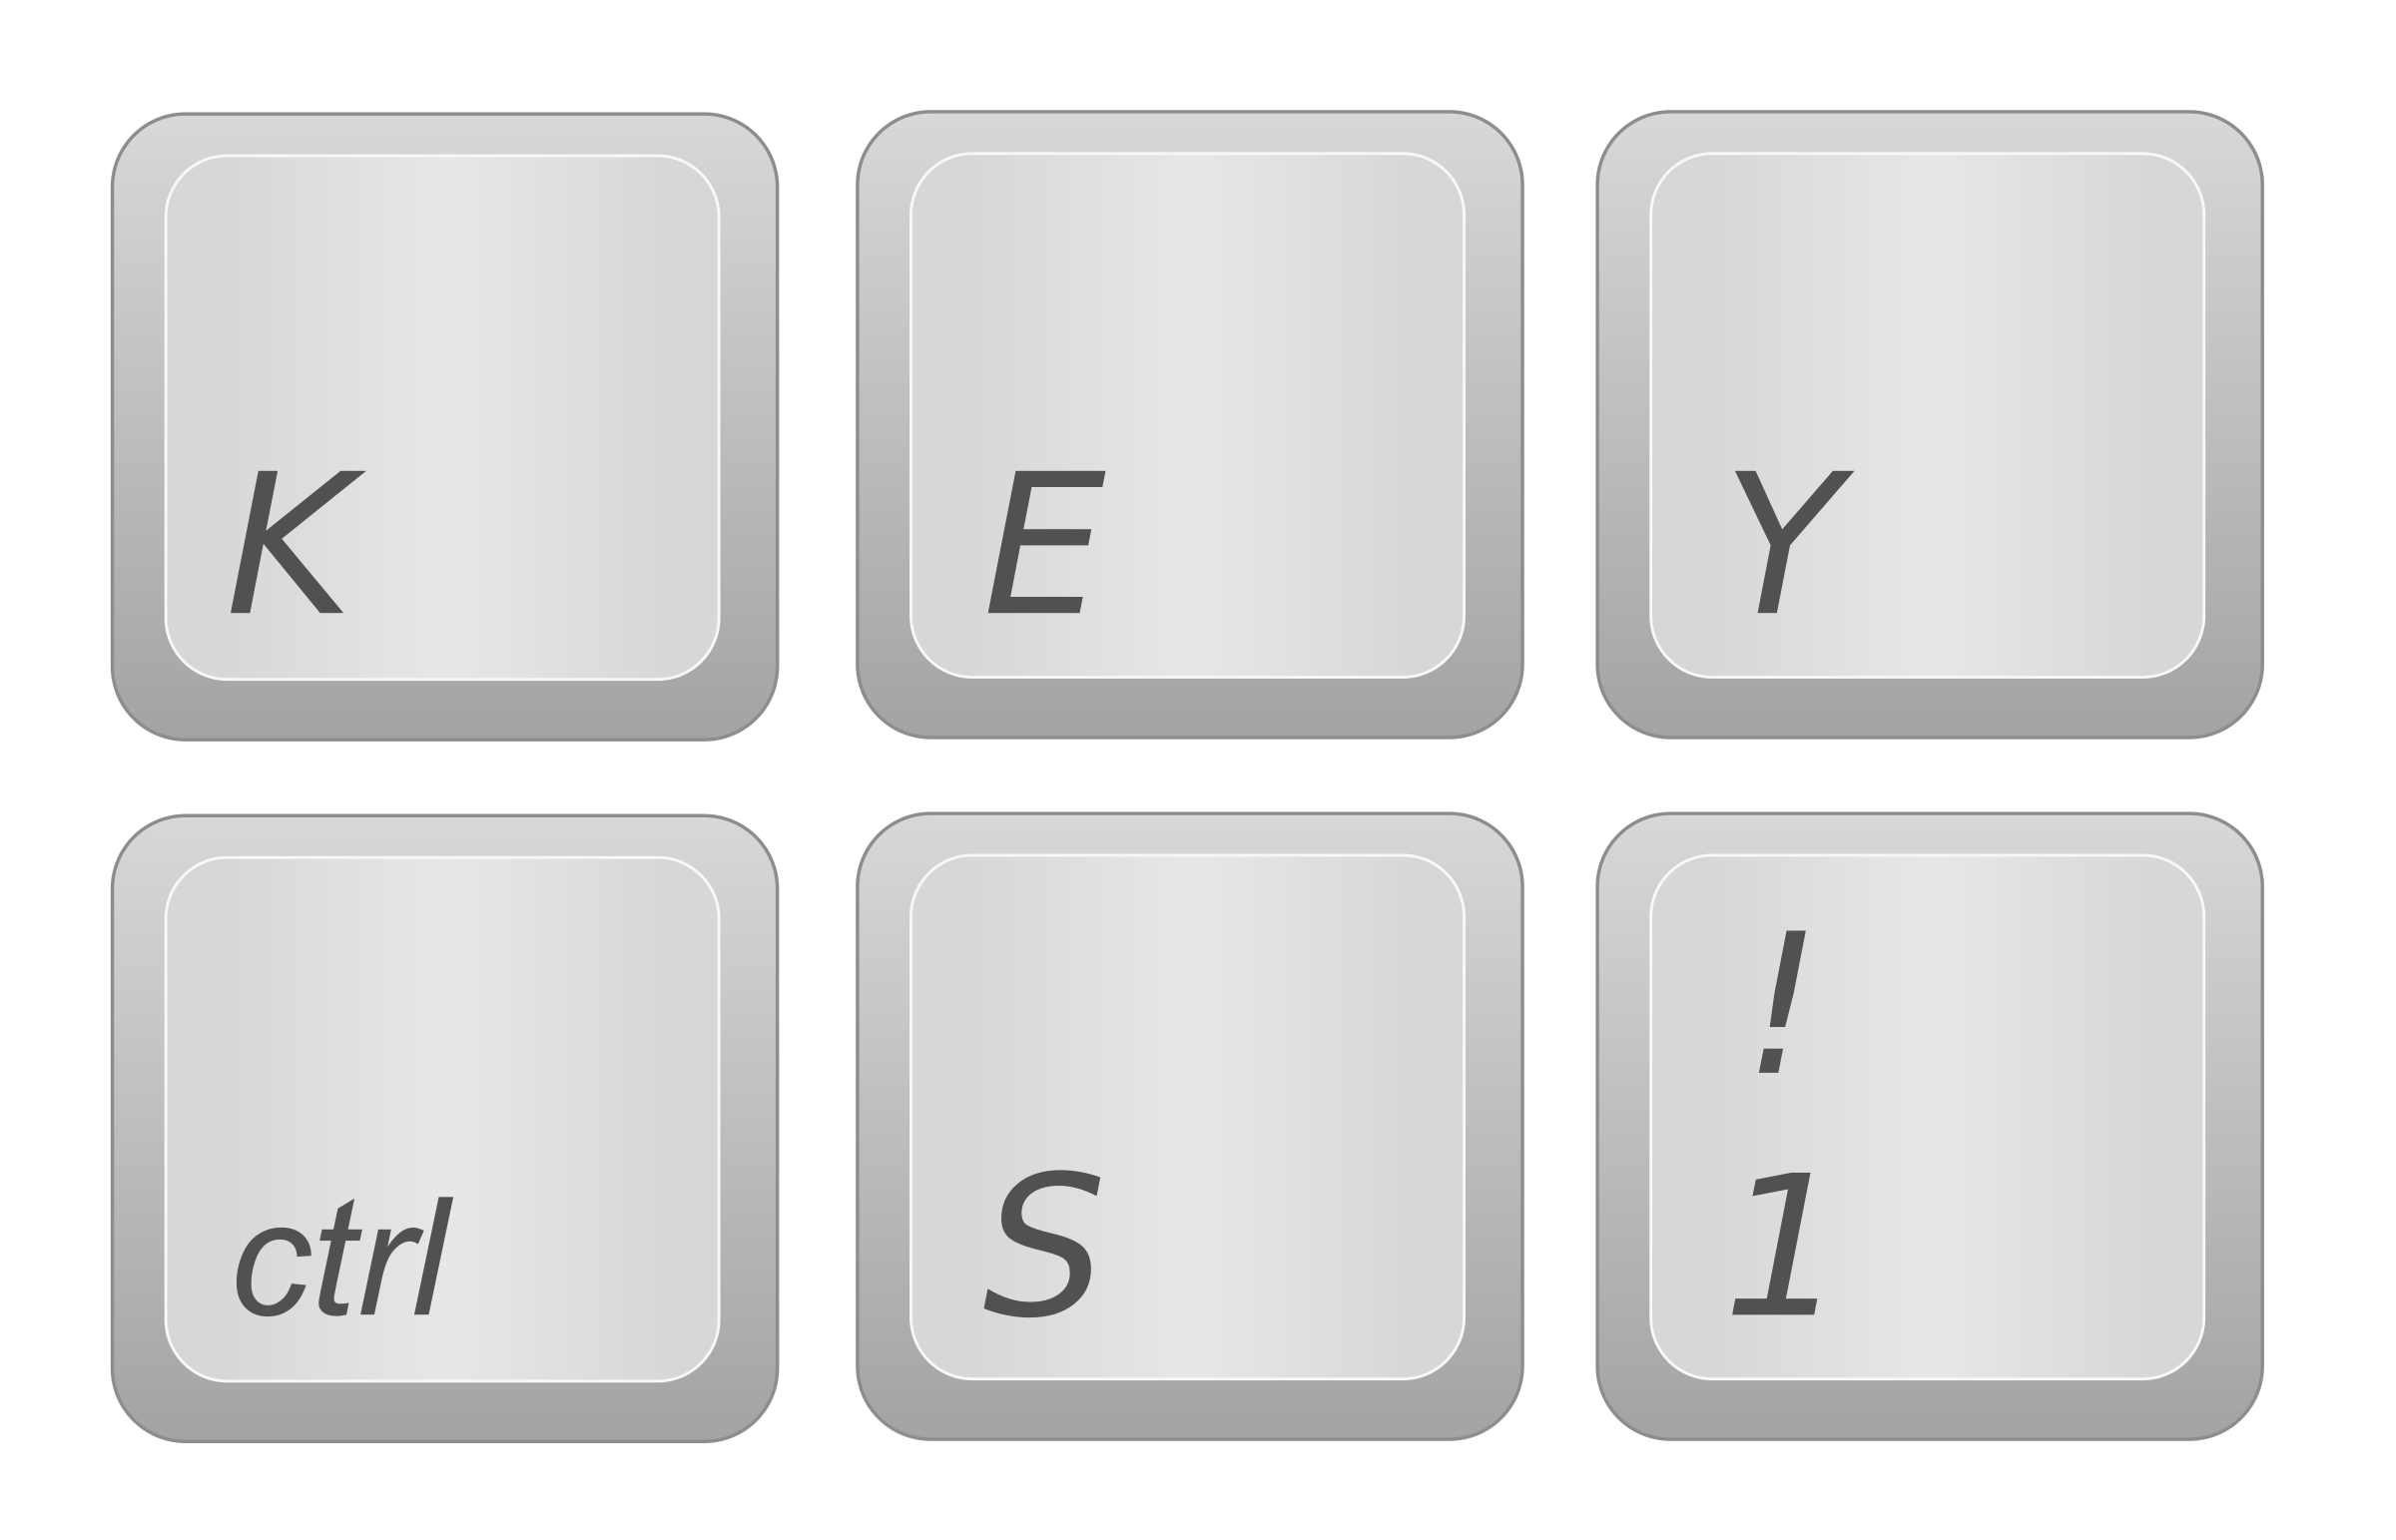 Images Of Keyboard Keys